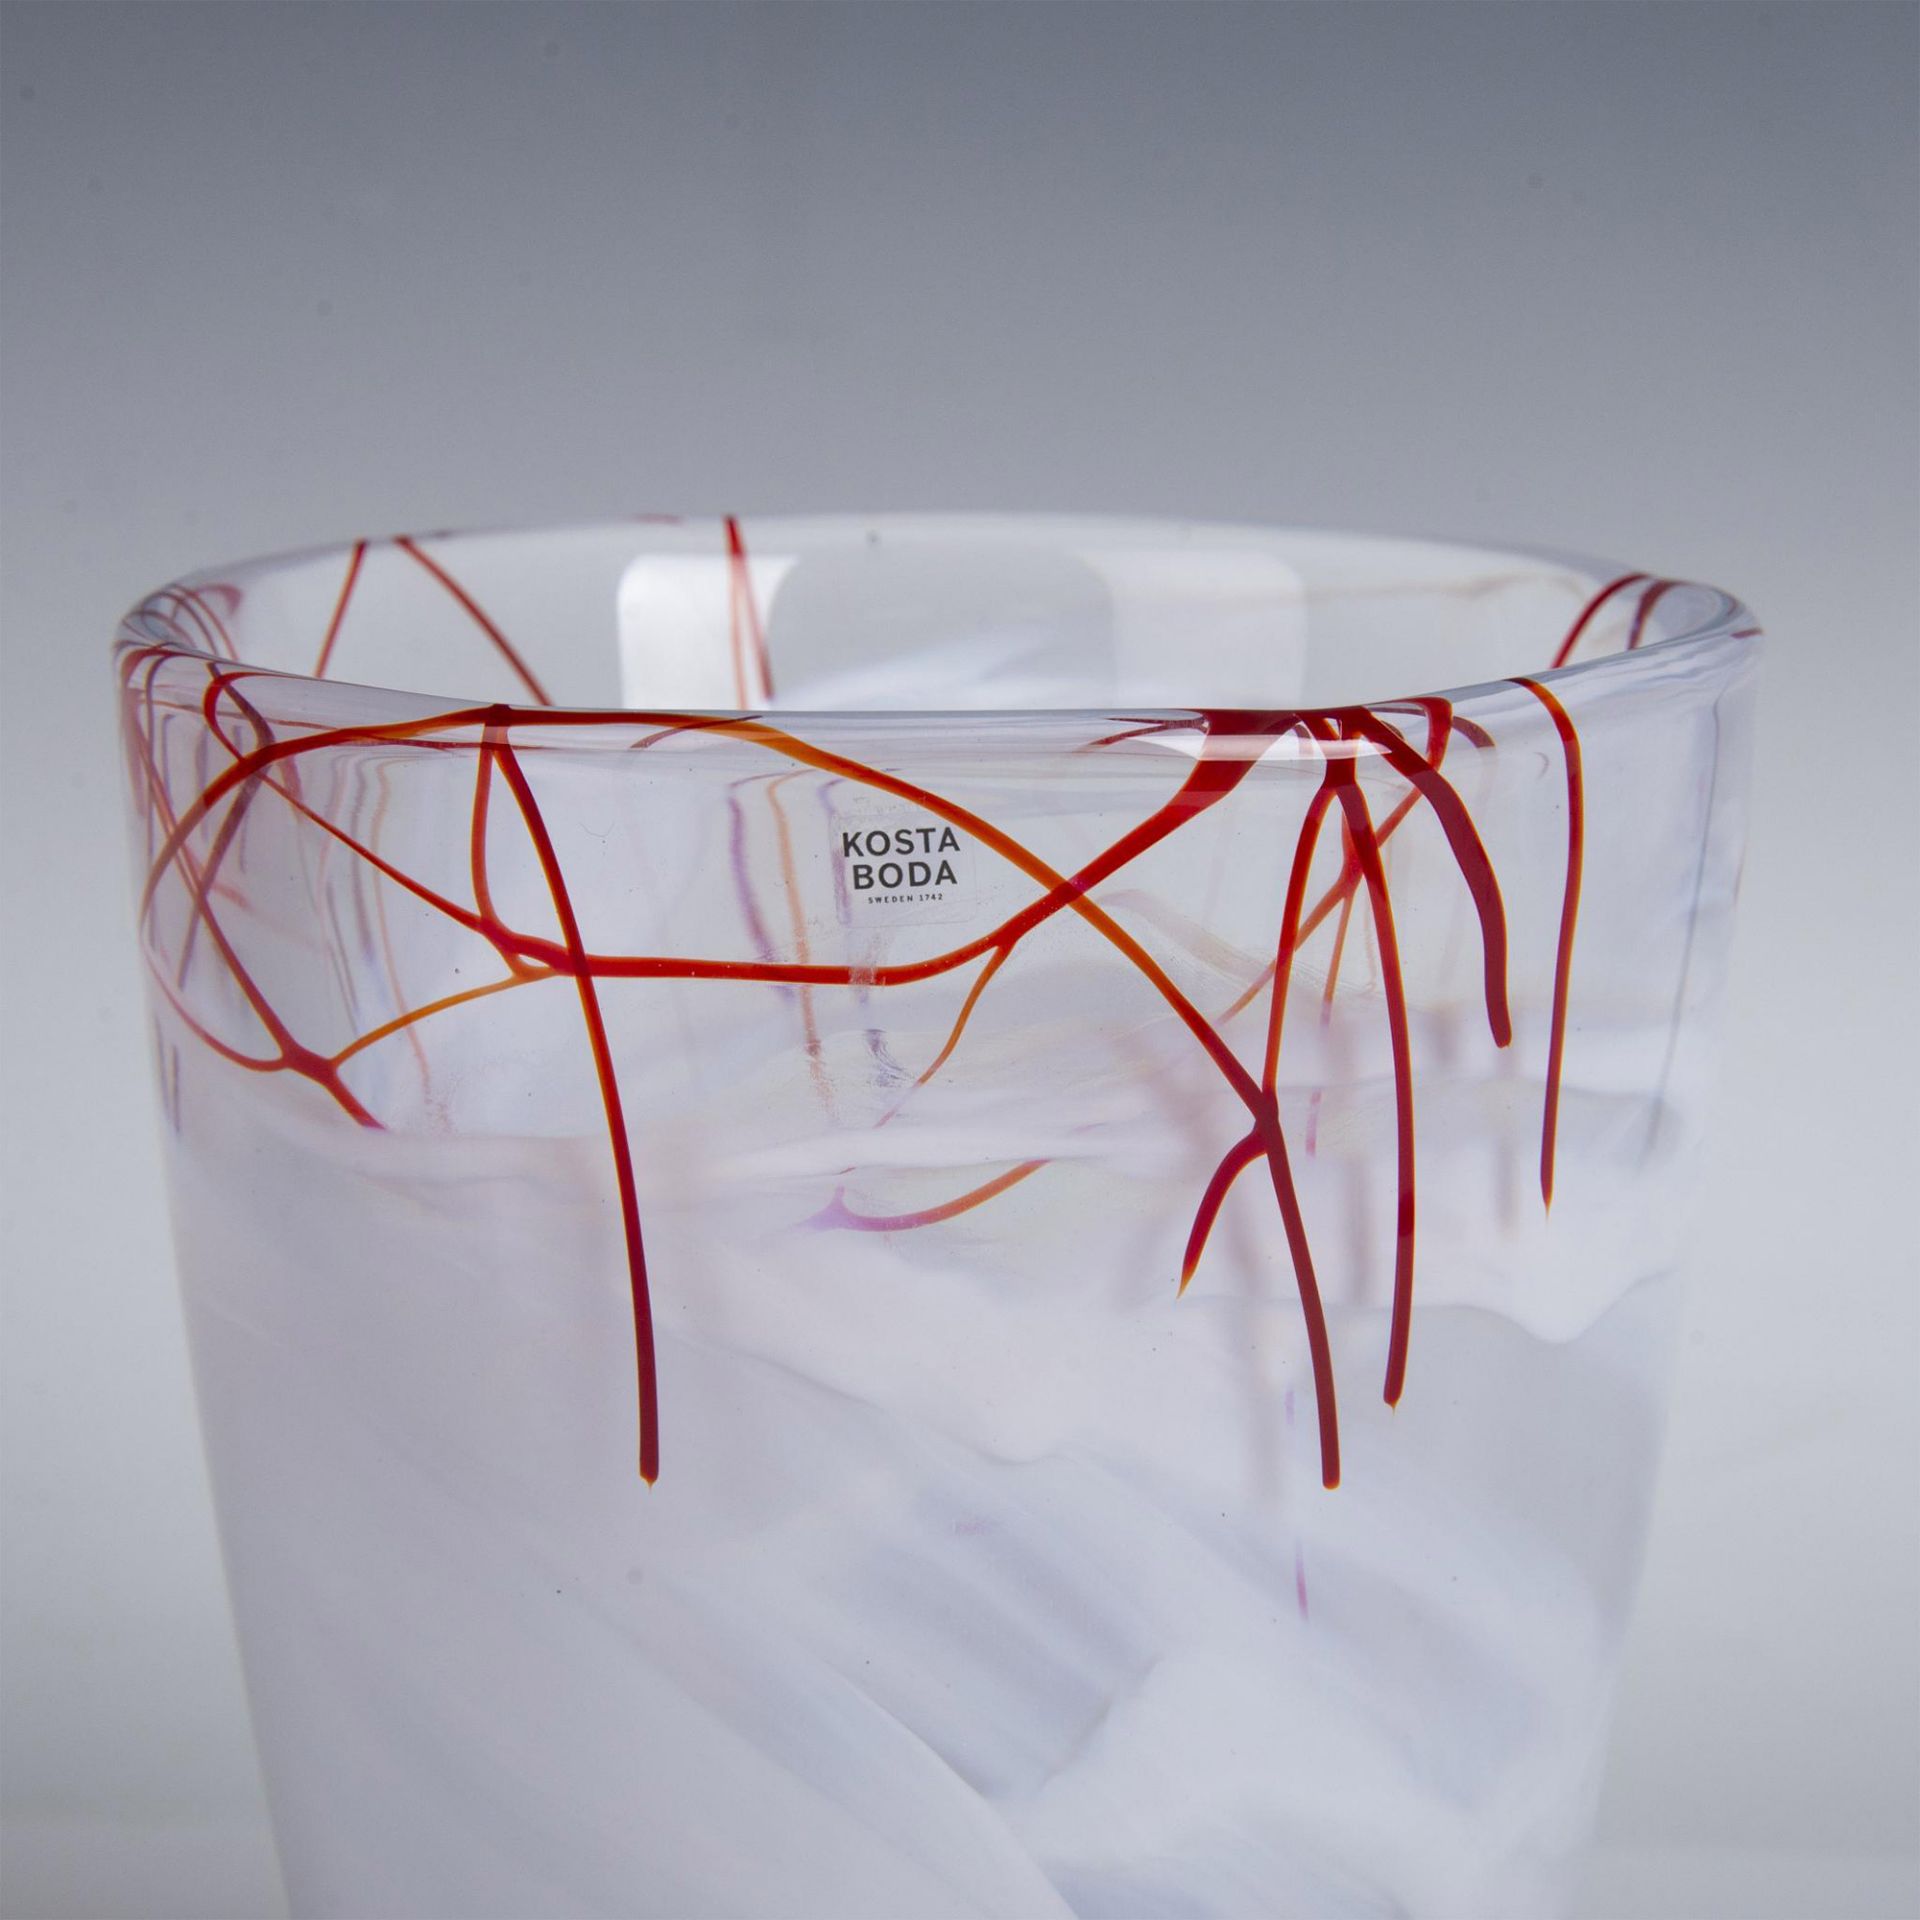 Kosta Boda by Anna Ehrner Art Glass Vase, Contrast - Image 3 of 5